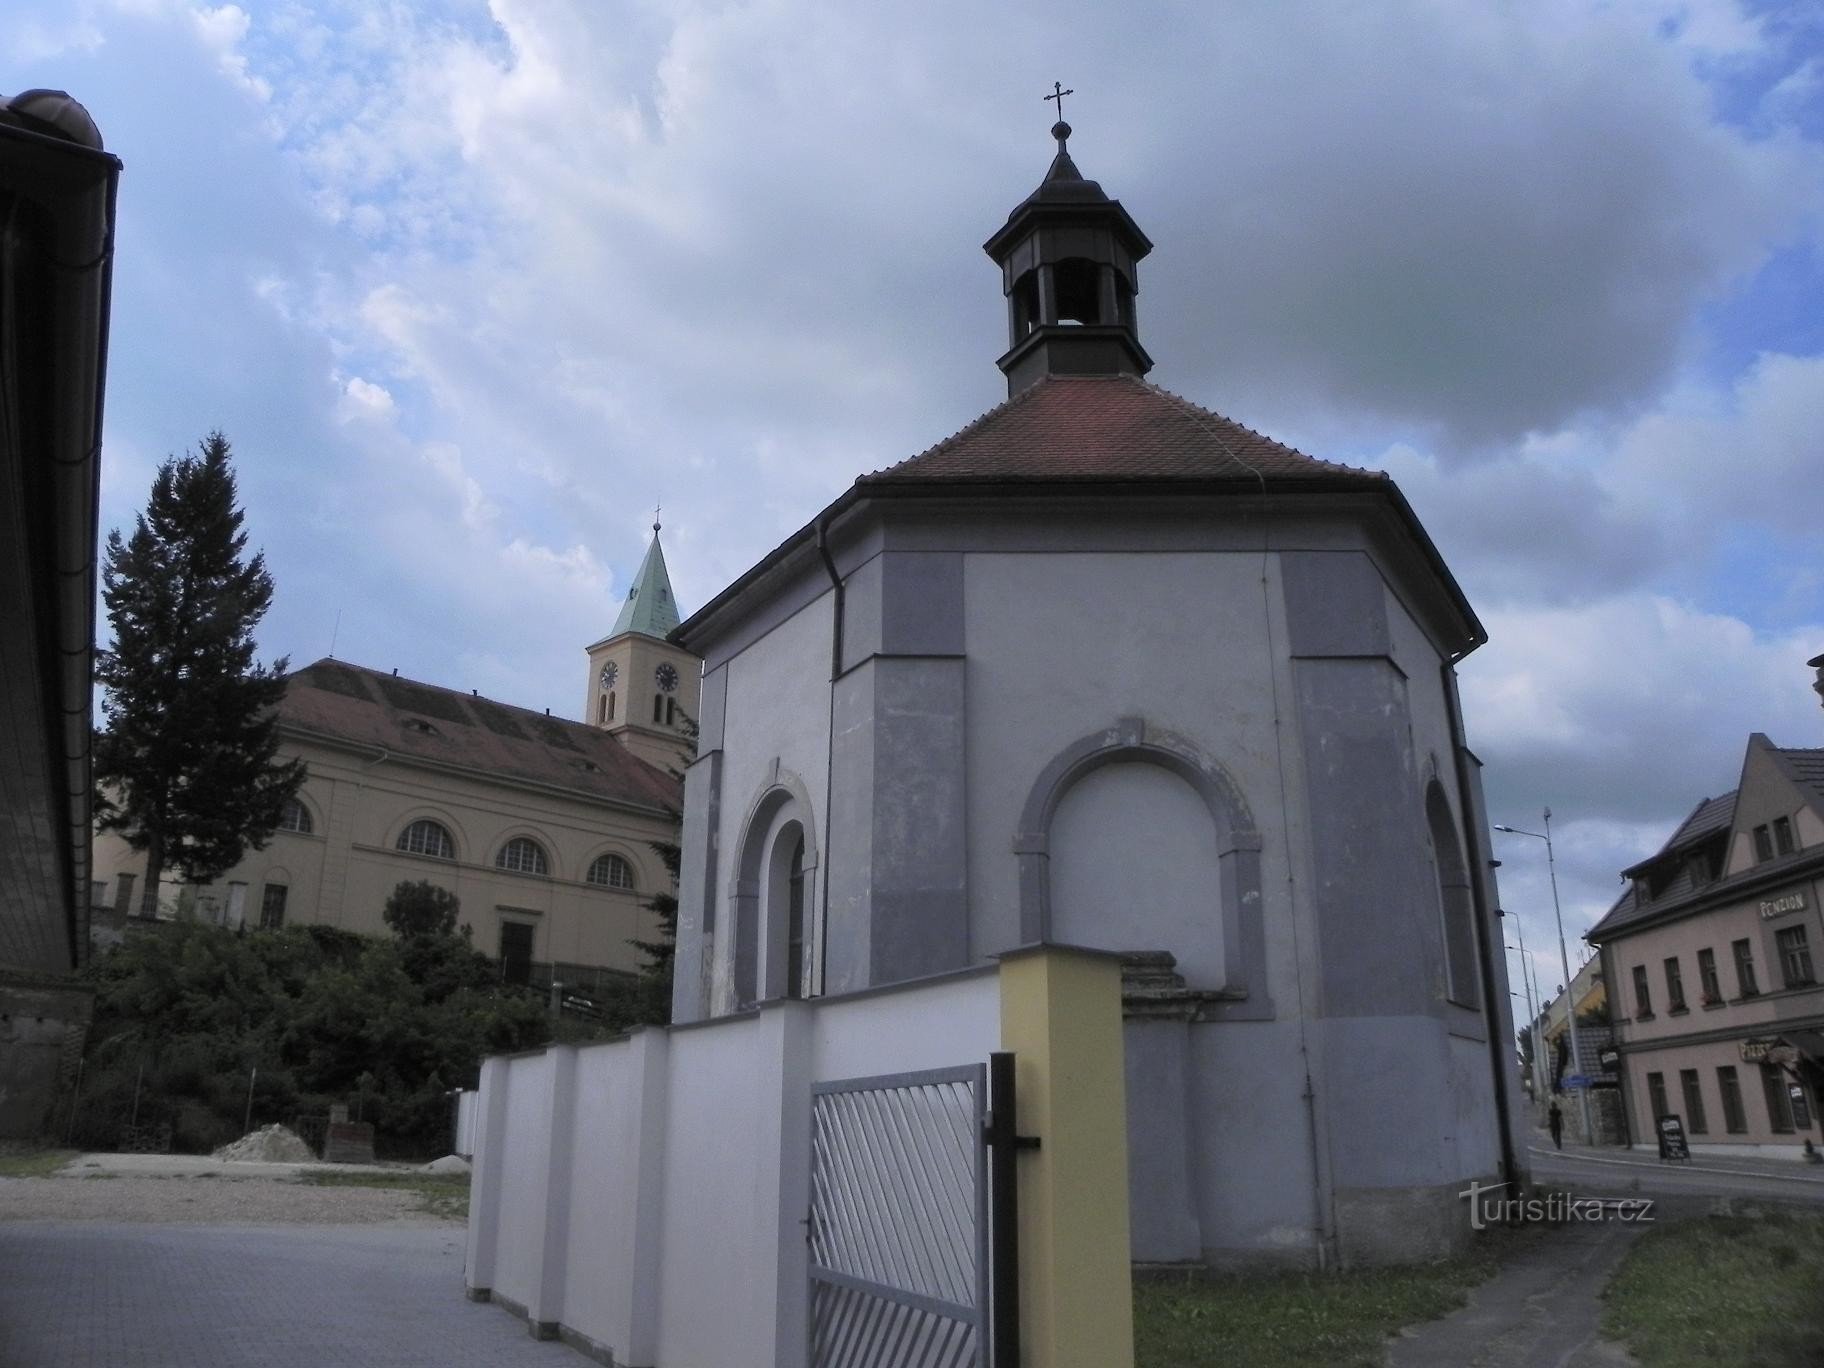 Stod, kyrkan och kapellet i St. Wenceslas